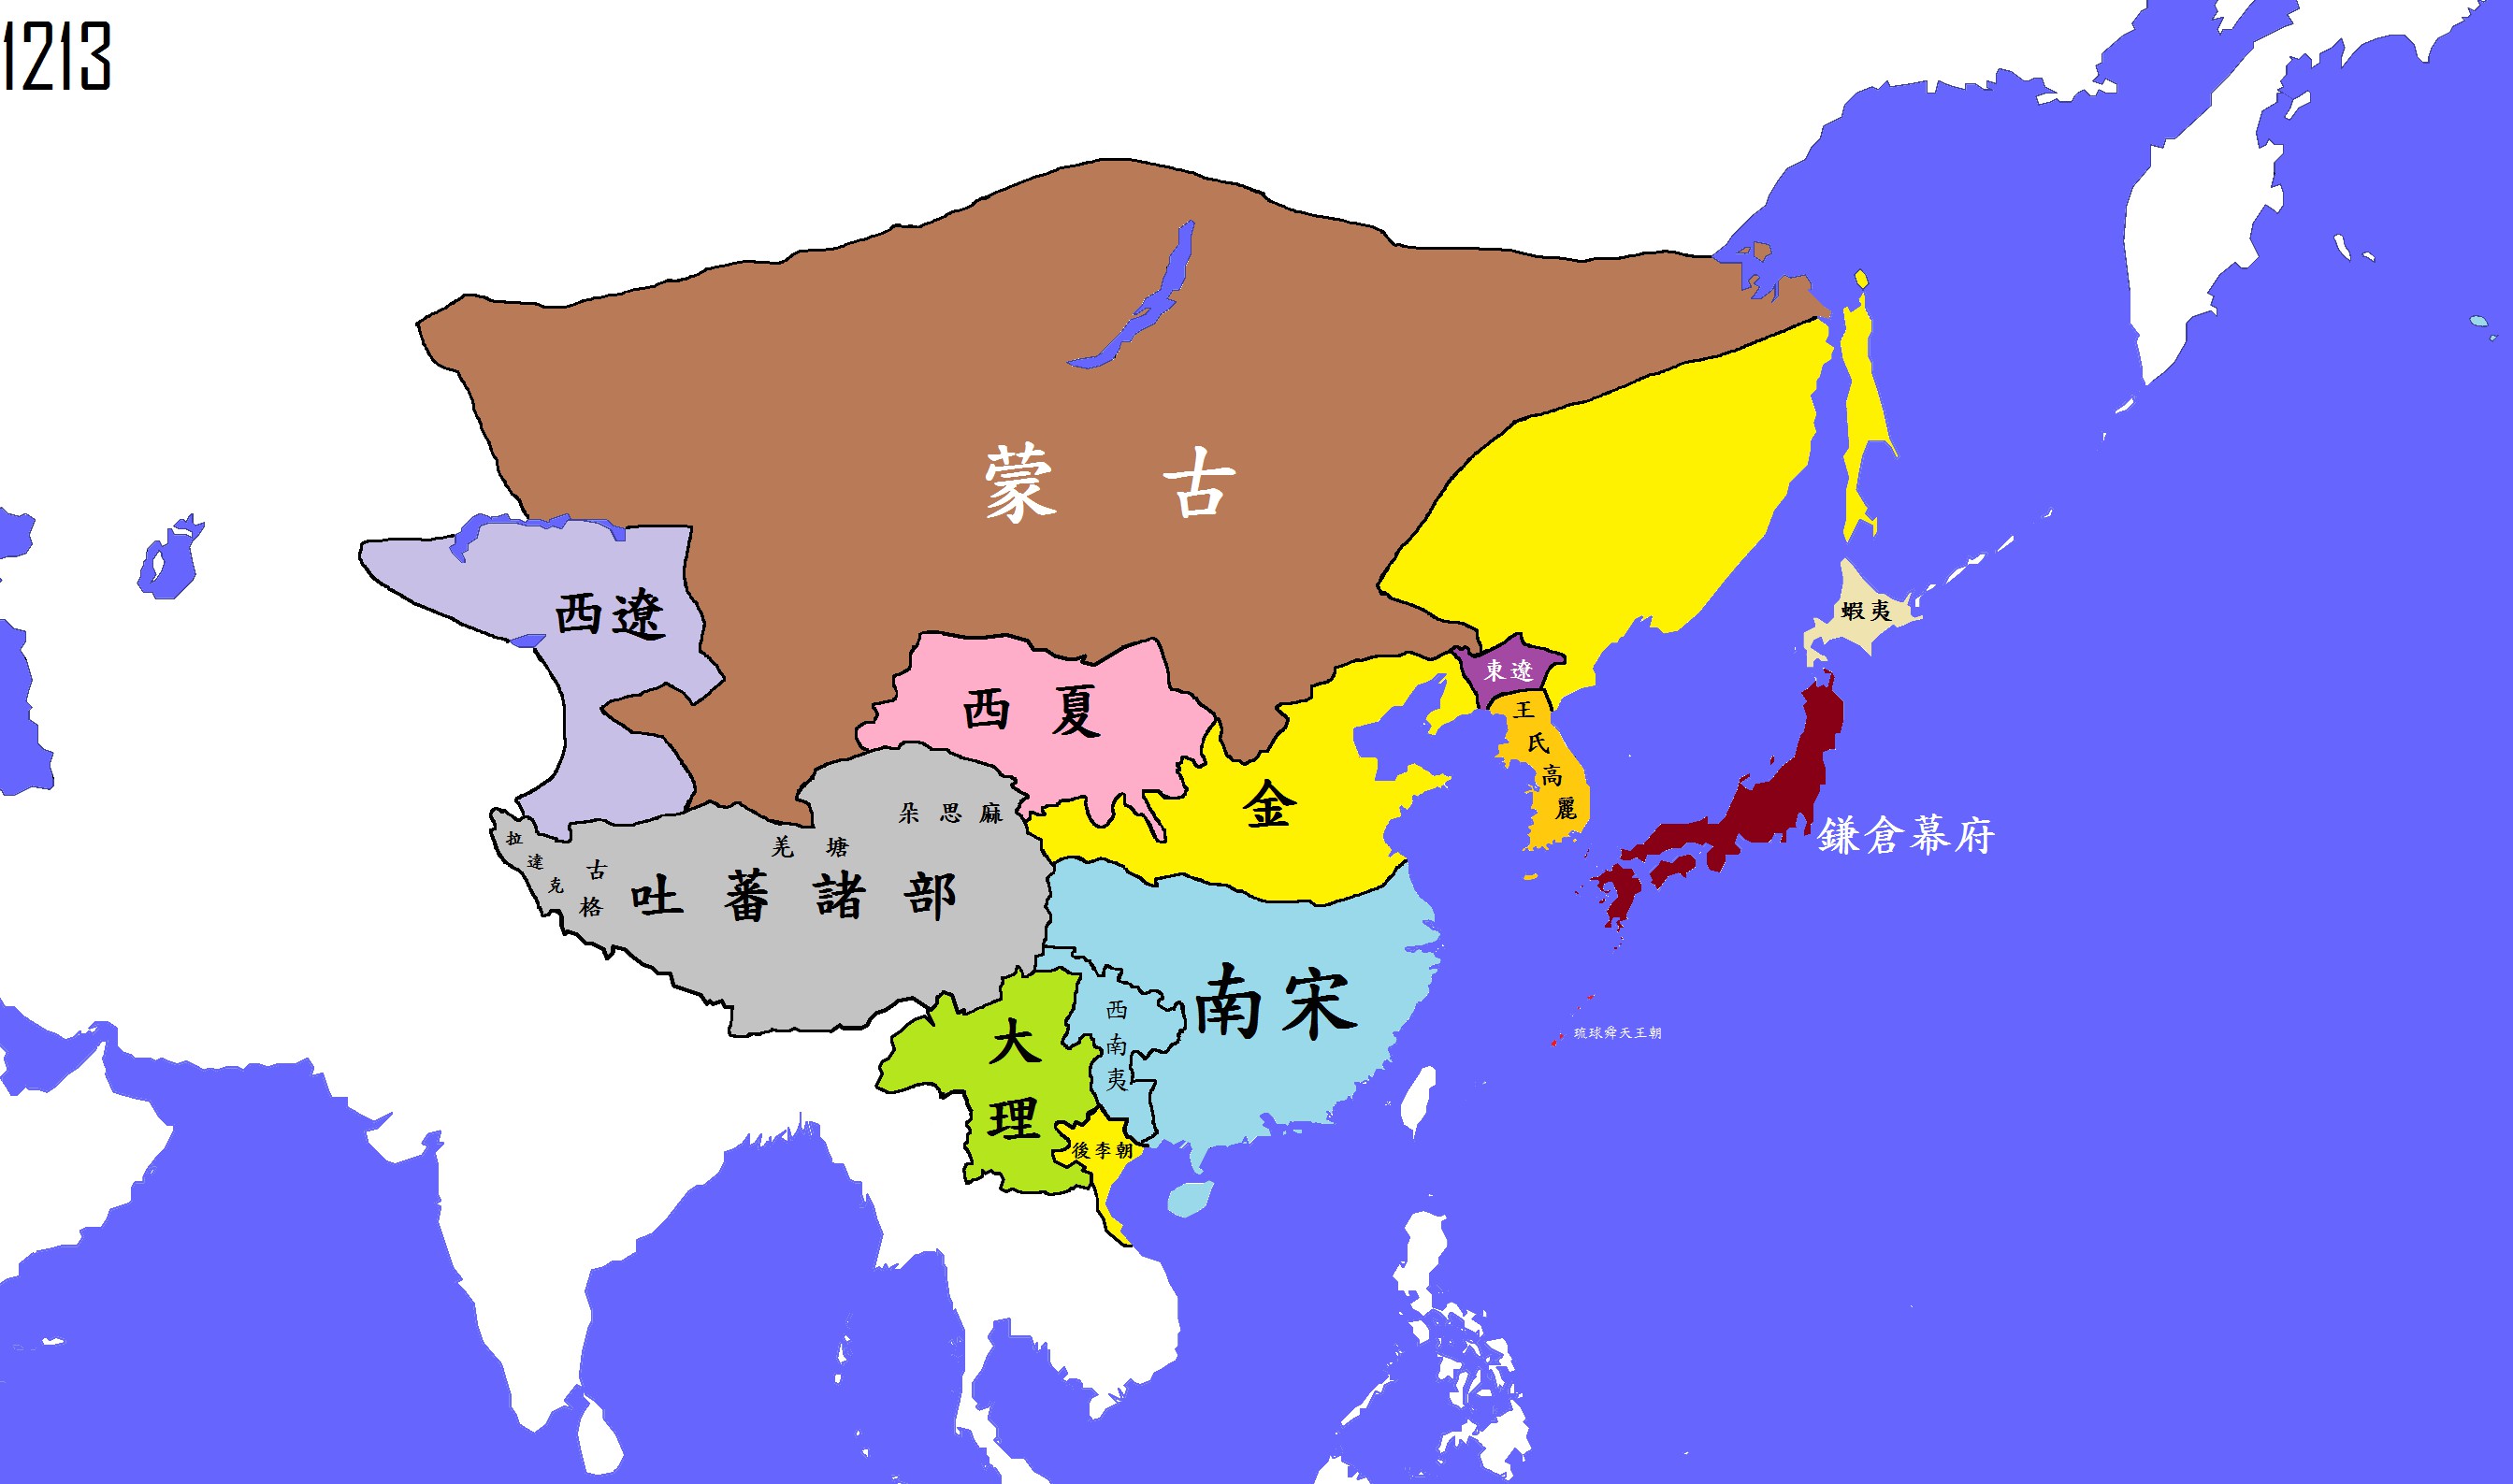 公元1213年(宋,西夏,金)_中国疆域地图查询